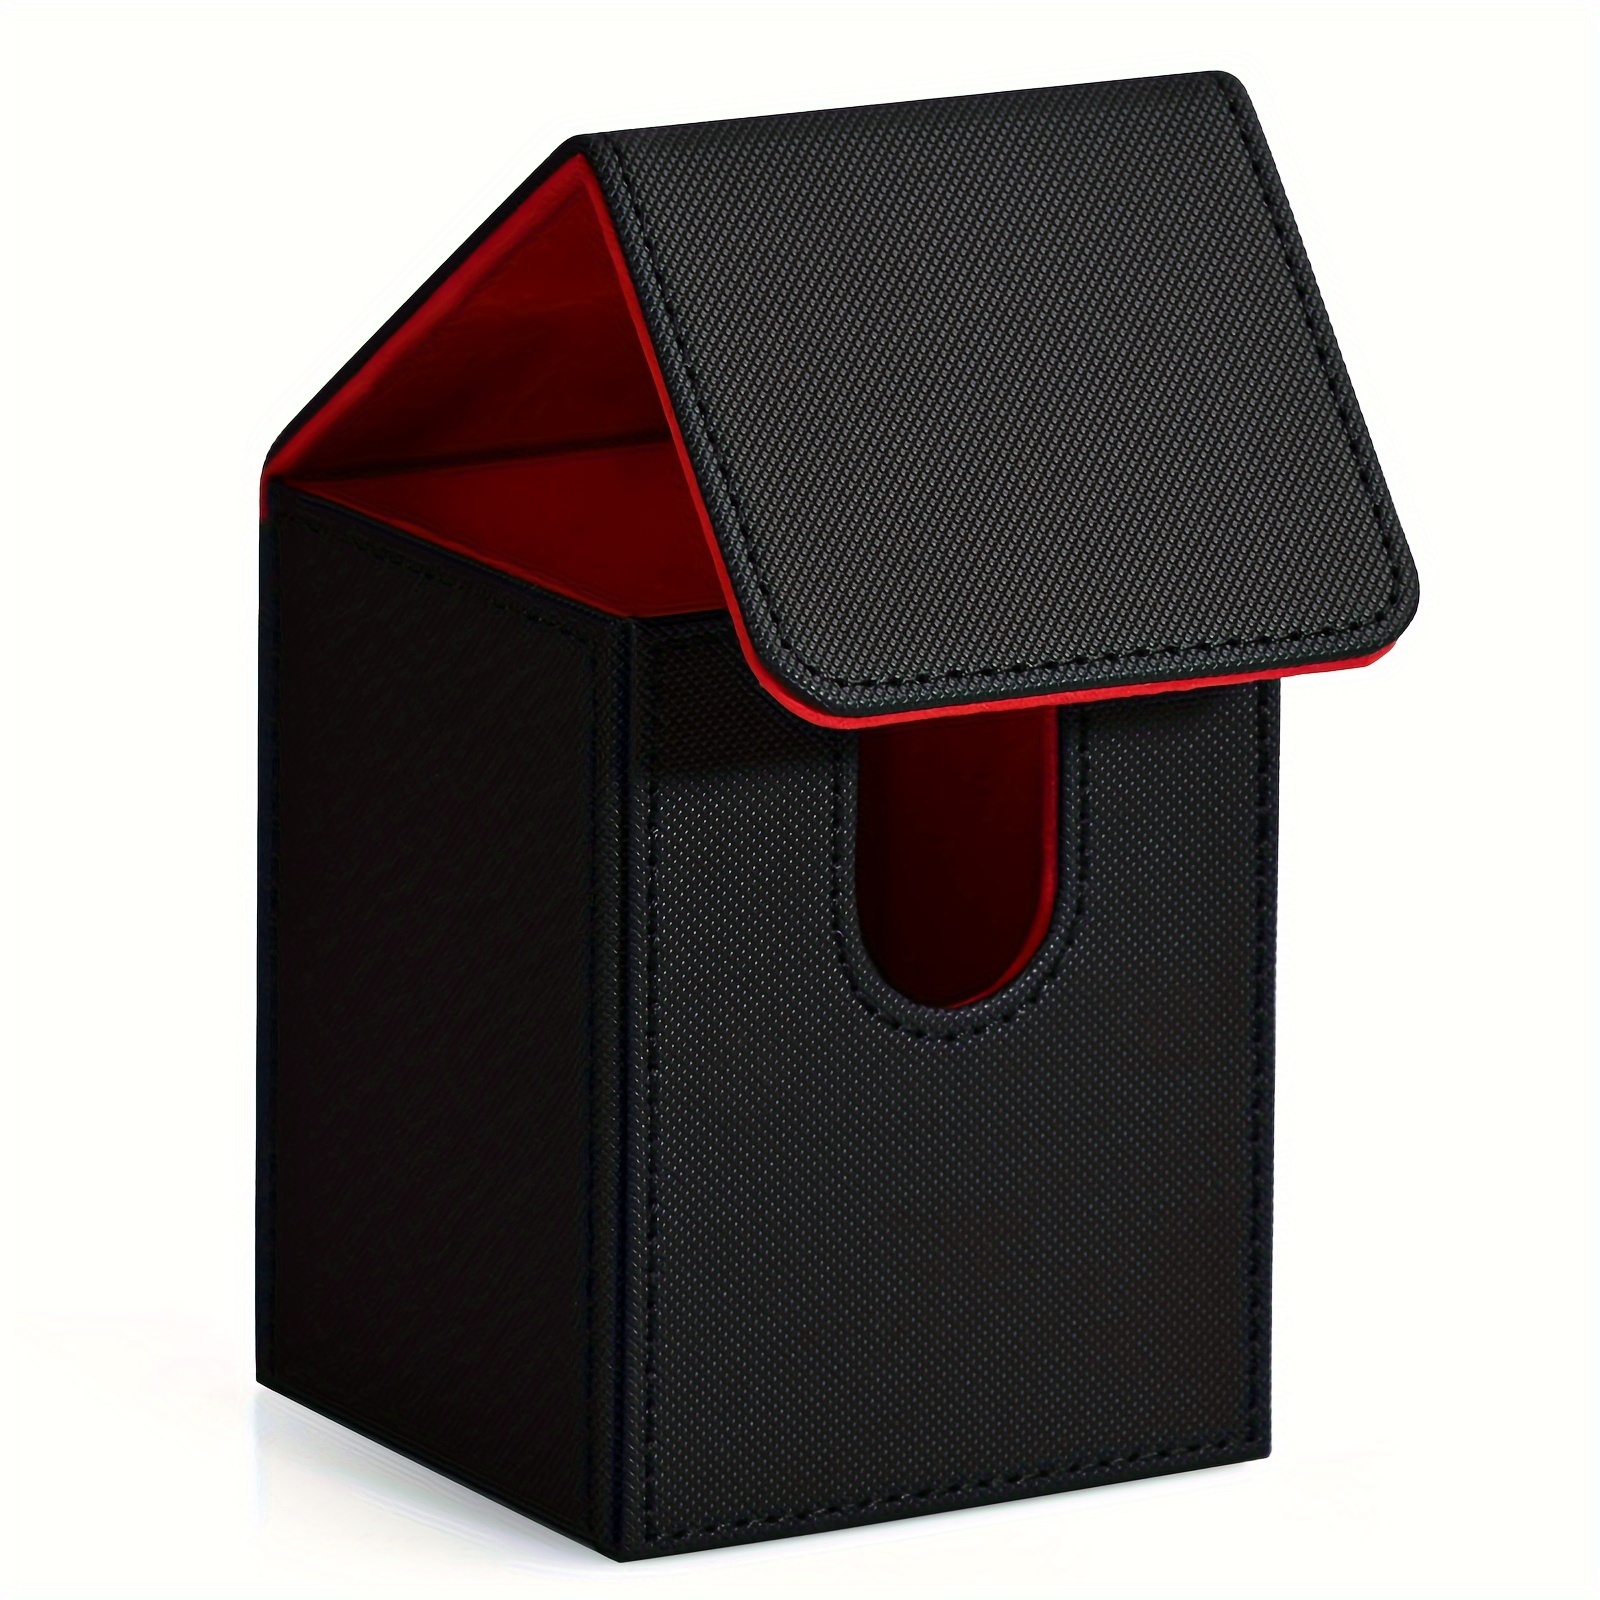 Tolesum Boîte de Rangement pour MTG, Trading Card Storage Box